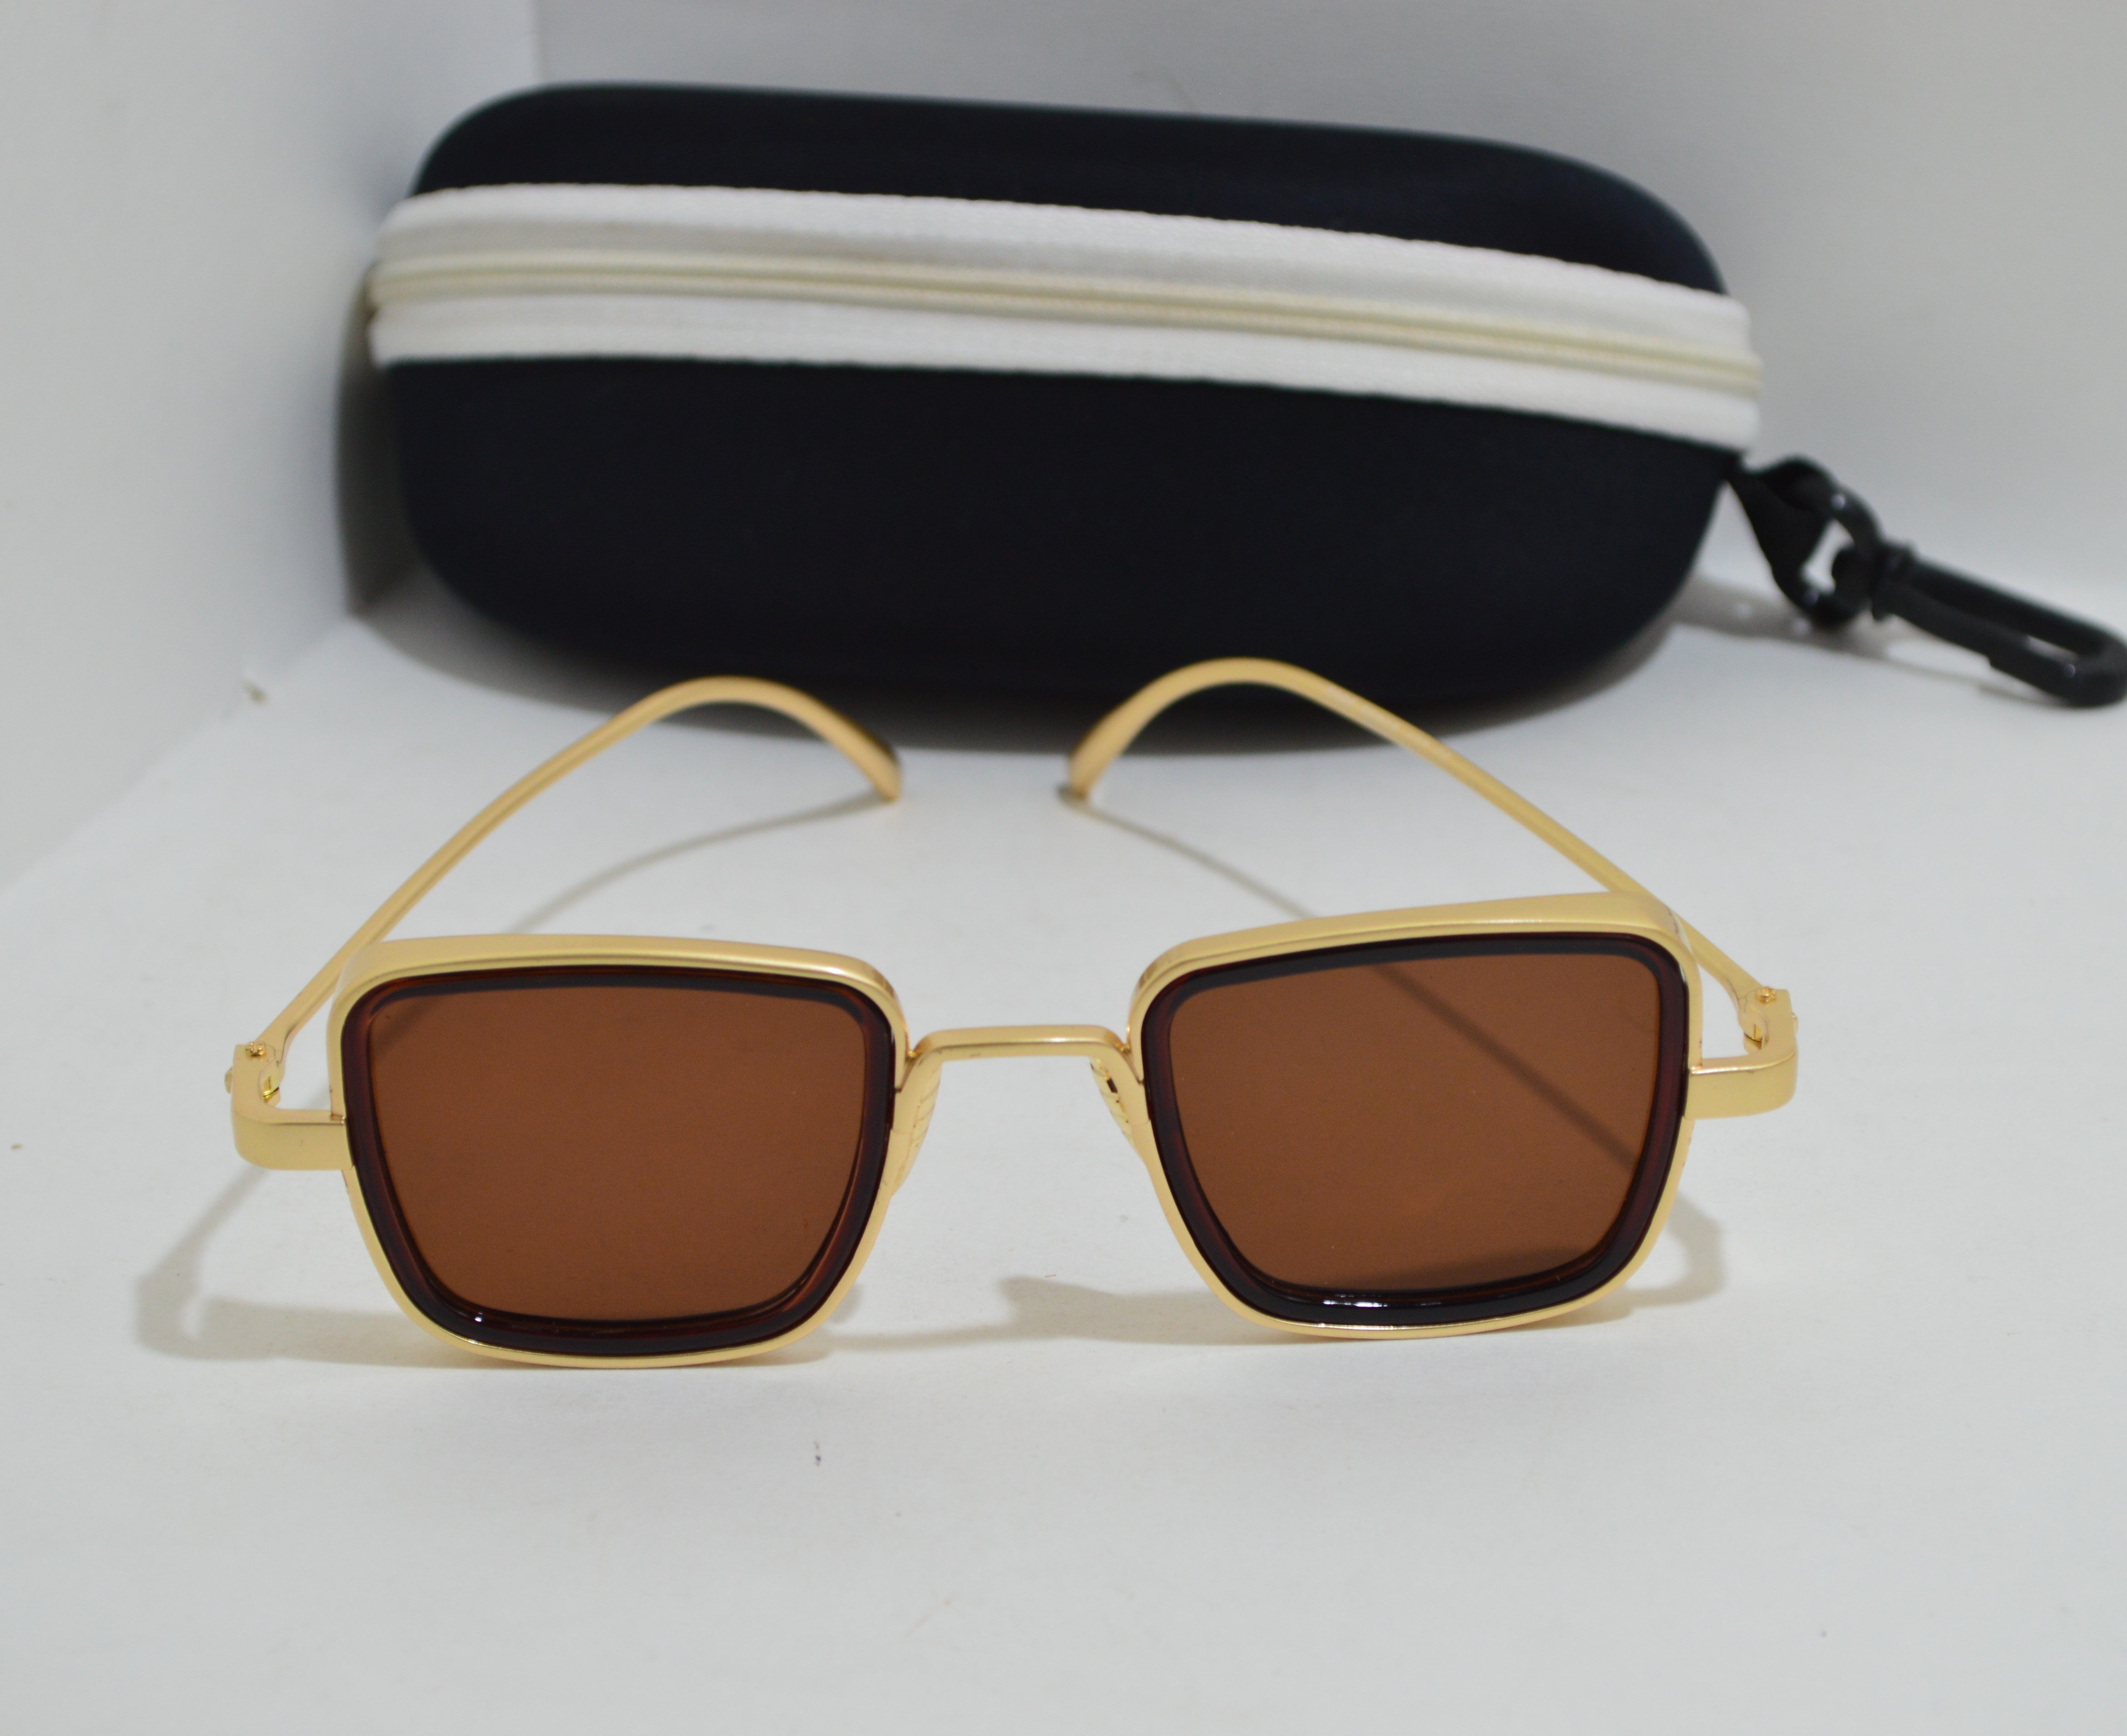 Kabir Singh Square Sunglasses Online  Unique and Stylish – The ShopCircuit